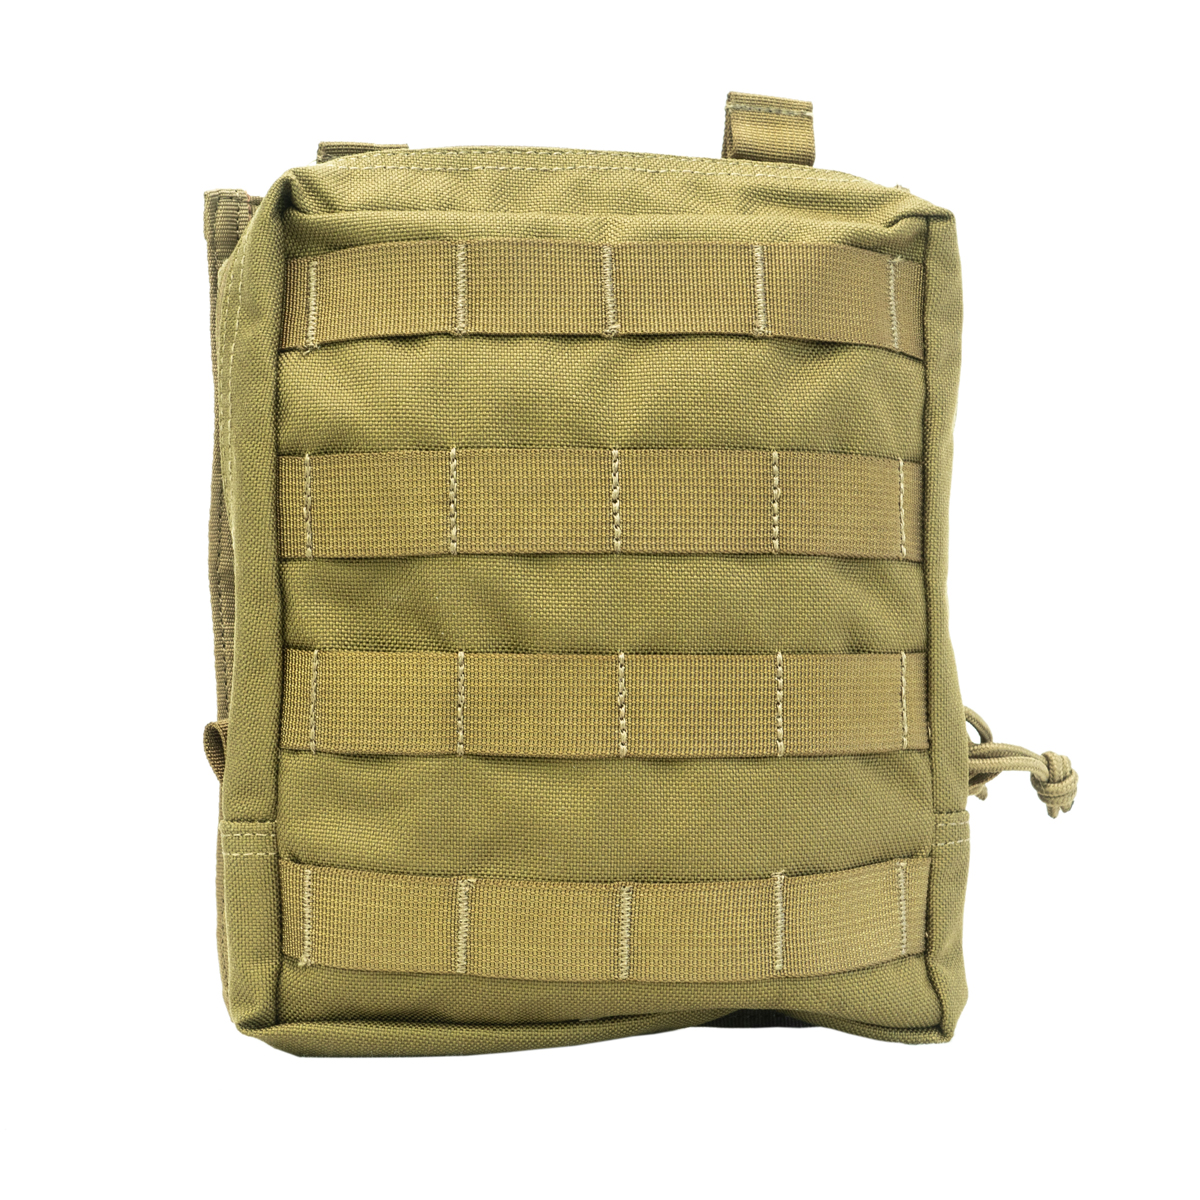 Kupite vojaško torbico Predator Large Utility Pouch QR modular Karrimor SF. Večnamenska torbica za vojaške potrebe, učinkovita in zanesljiva. Opremljen.si.